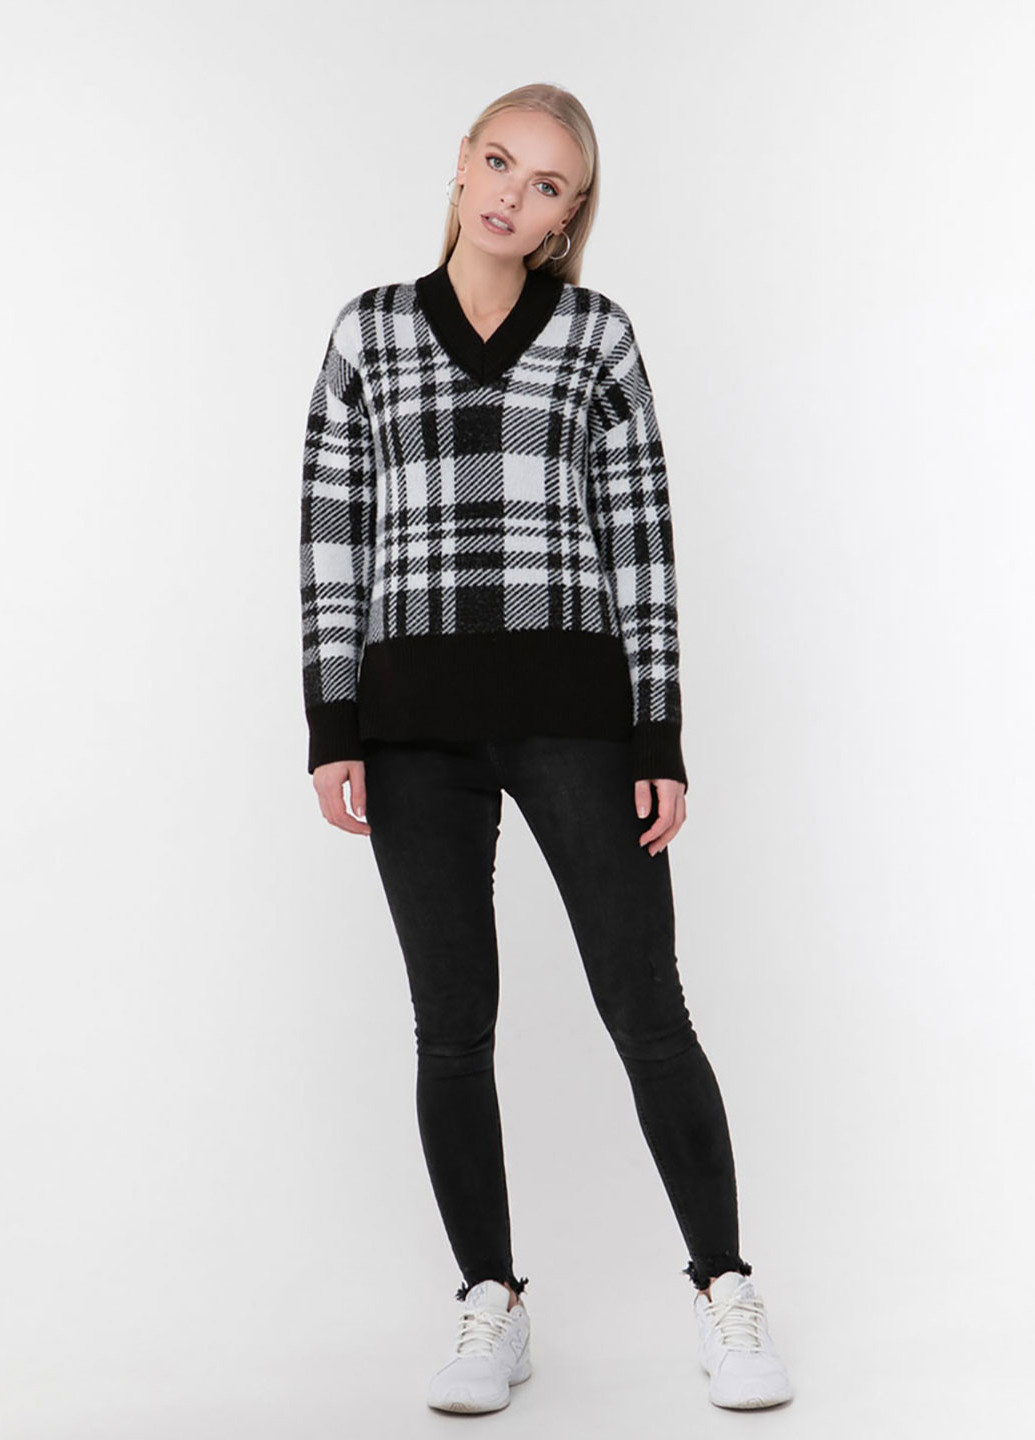 Черно-белый демисезонный пуловер пуловер Sewel